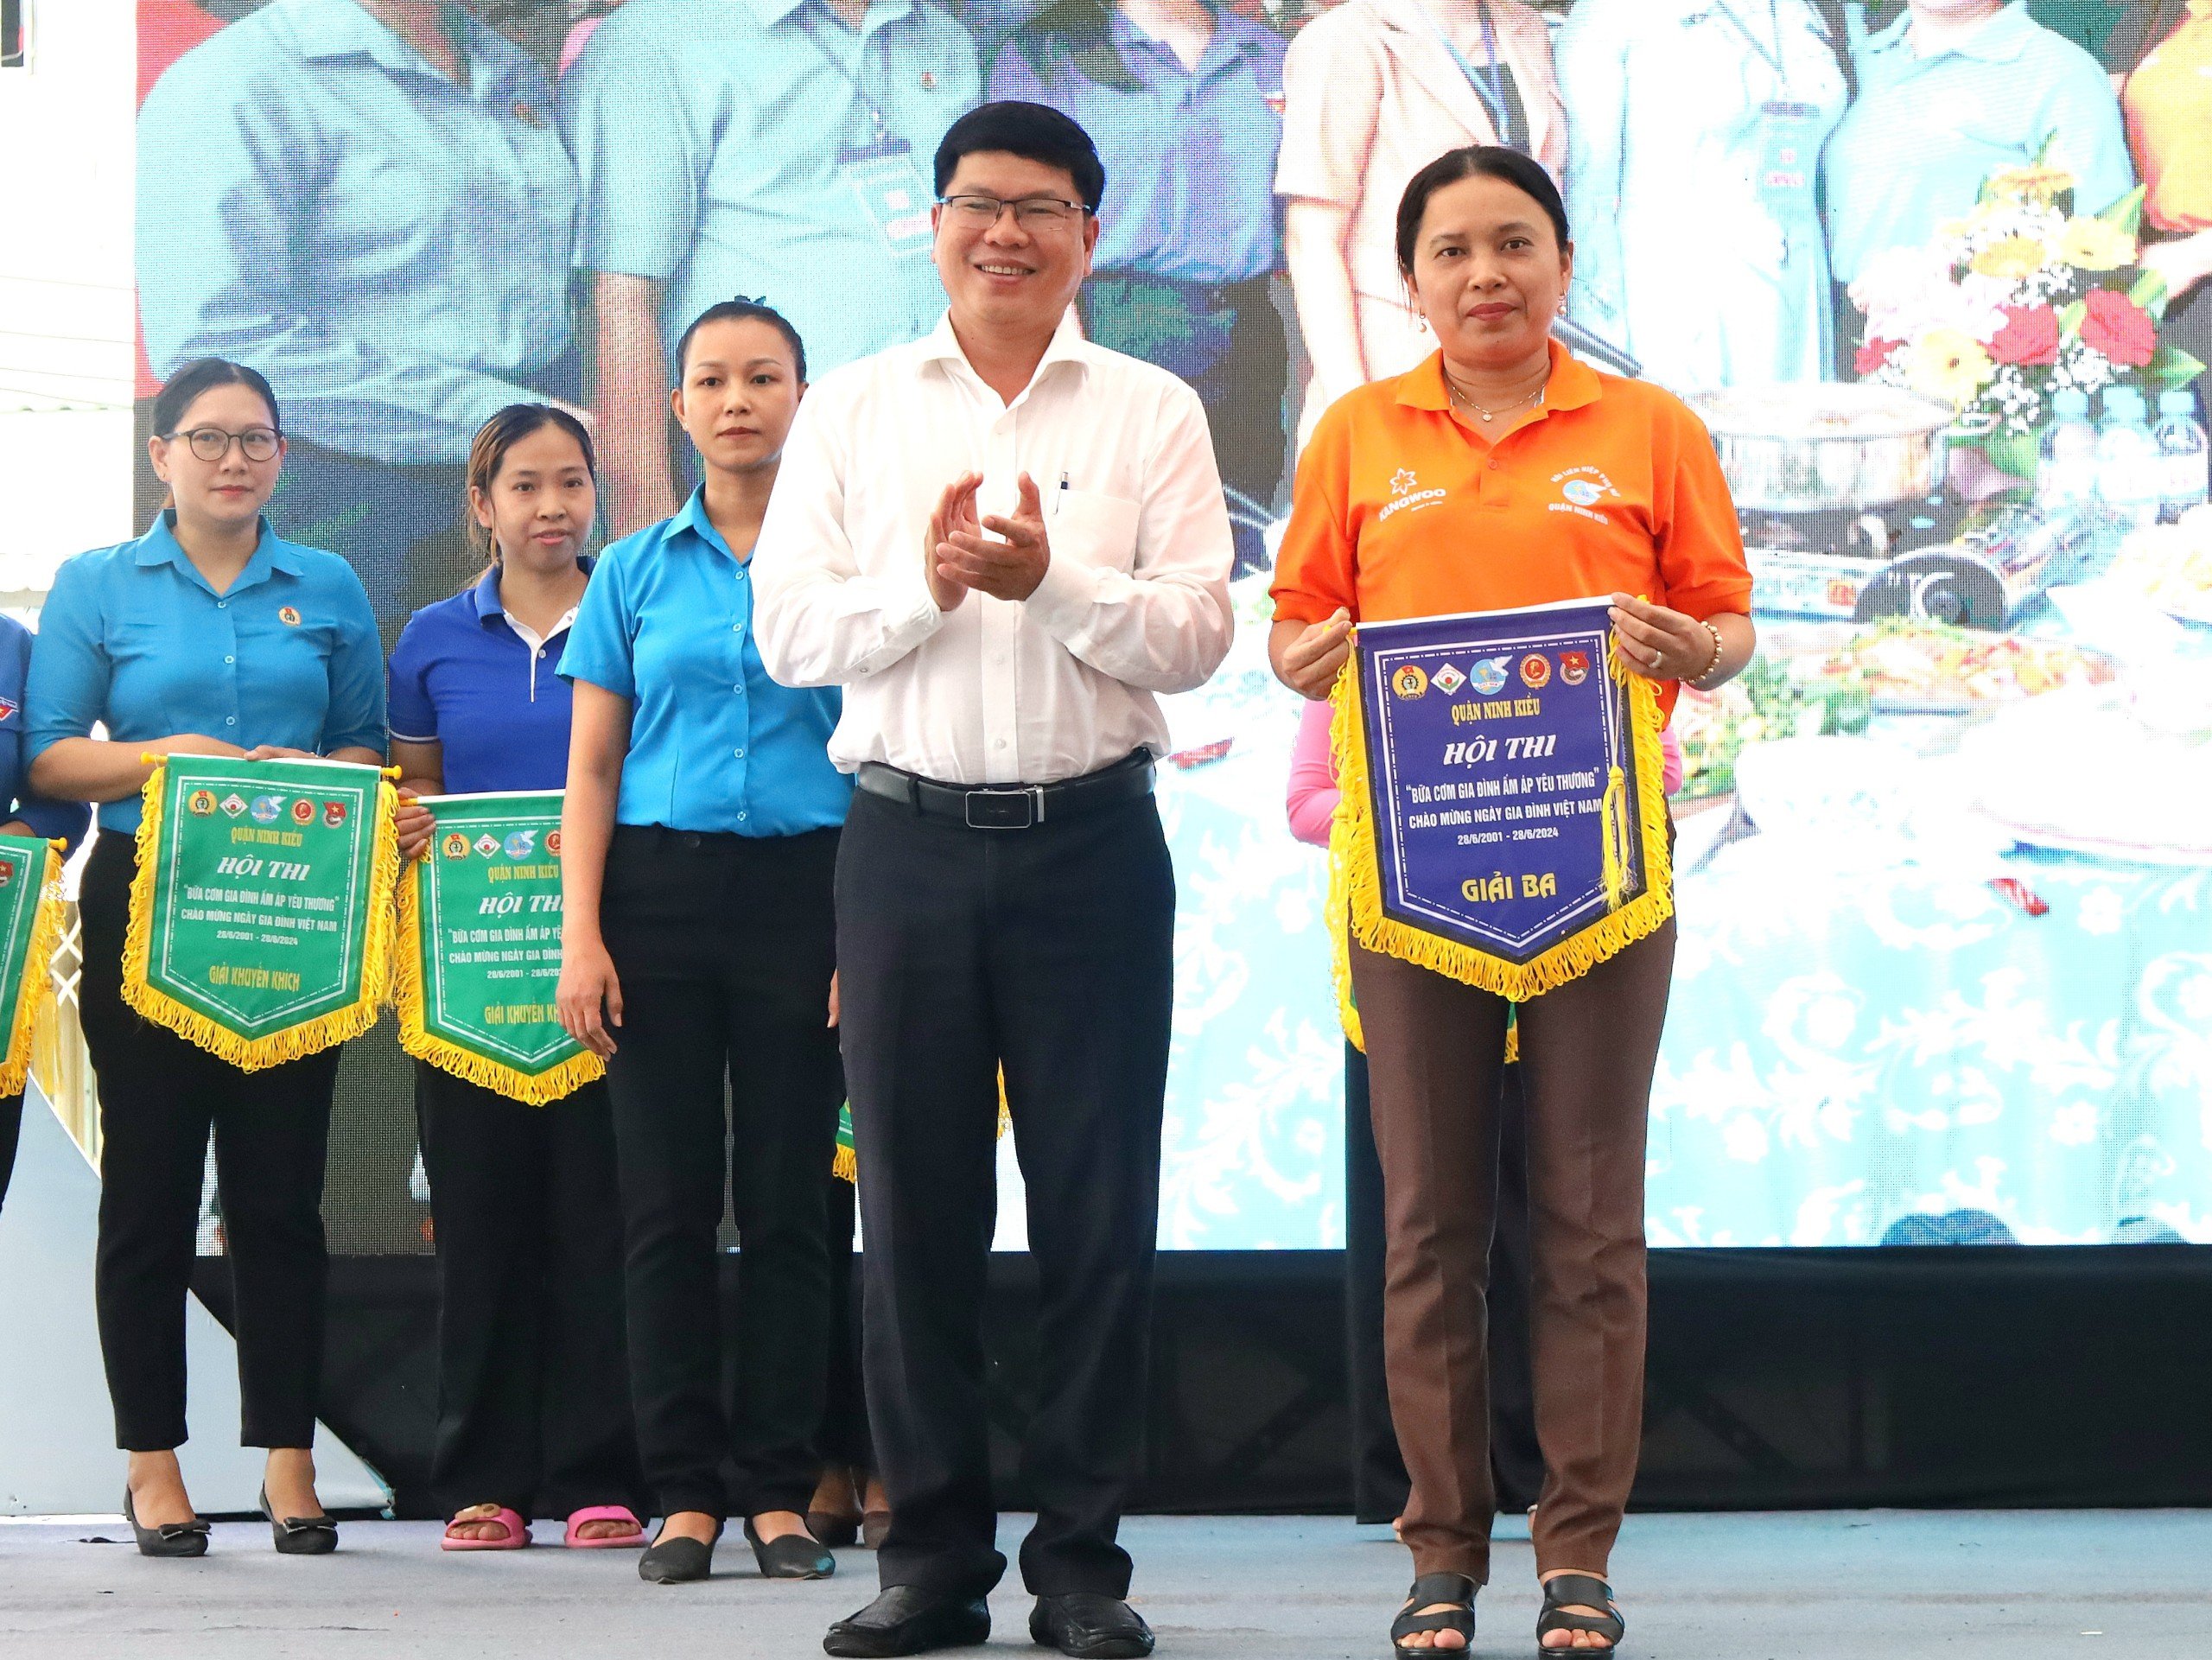 Ông Nguyễn Thái Bảo - Phó Chủ tịch UBND quận Ninh Kiều trao Giải ba cho đơn vị Phường An Bình.